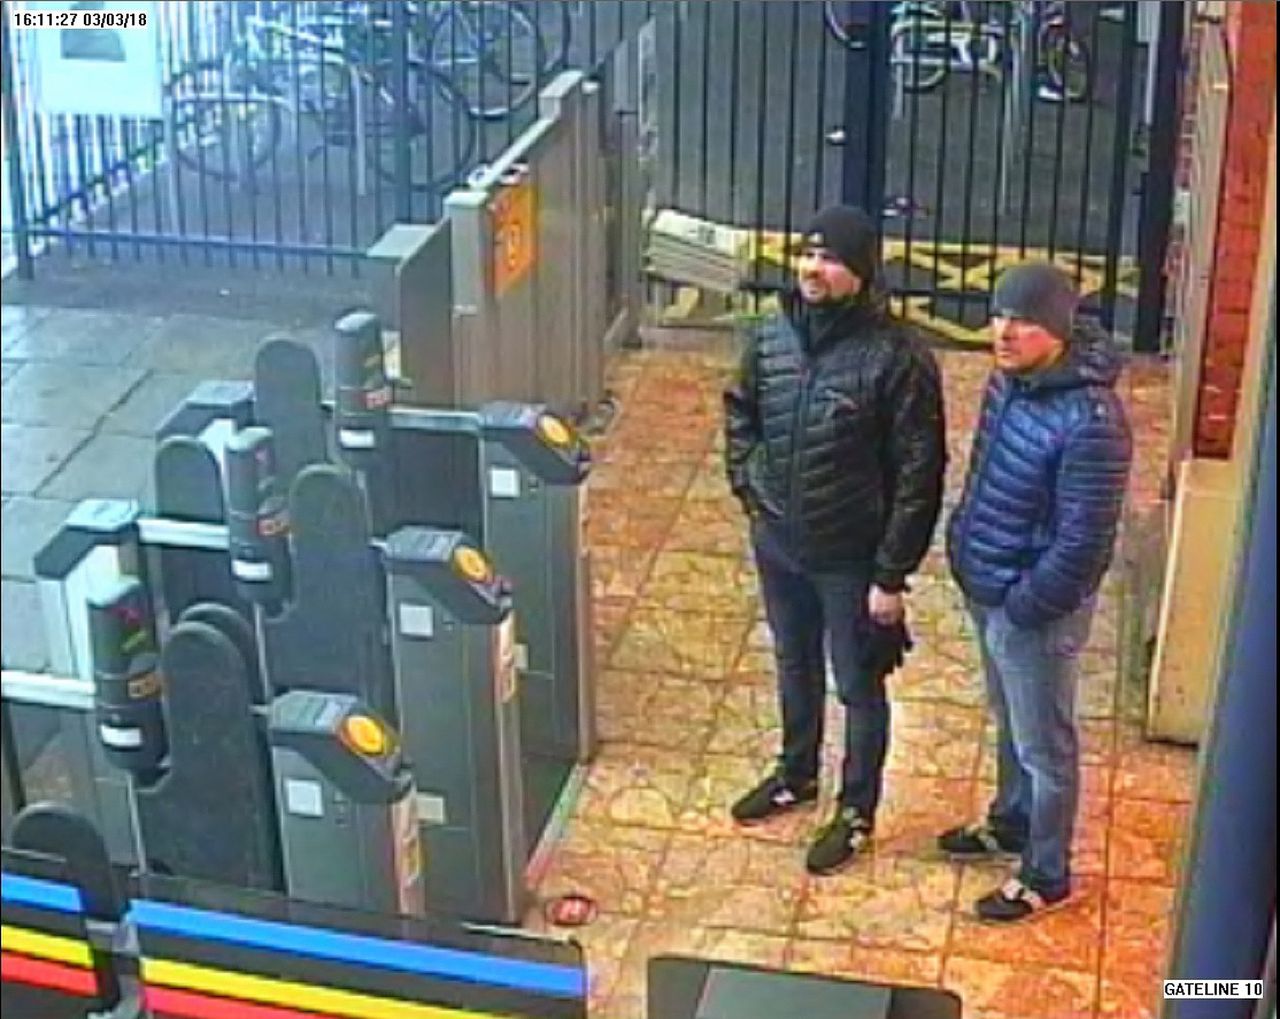 Alexandr Petrov (r) en Roeslan Bosjirov (l) in Salisbury, waar zij Sergej Skripal vergiftigd zouden hebben. De twee Russen staan nu ook op een Amerikaanse sanctielijst.